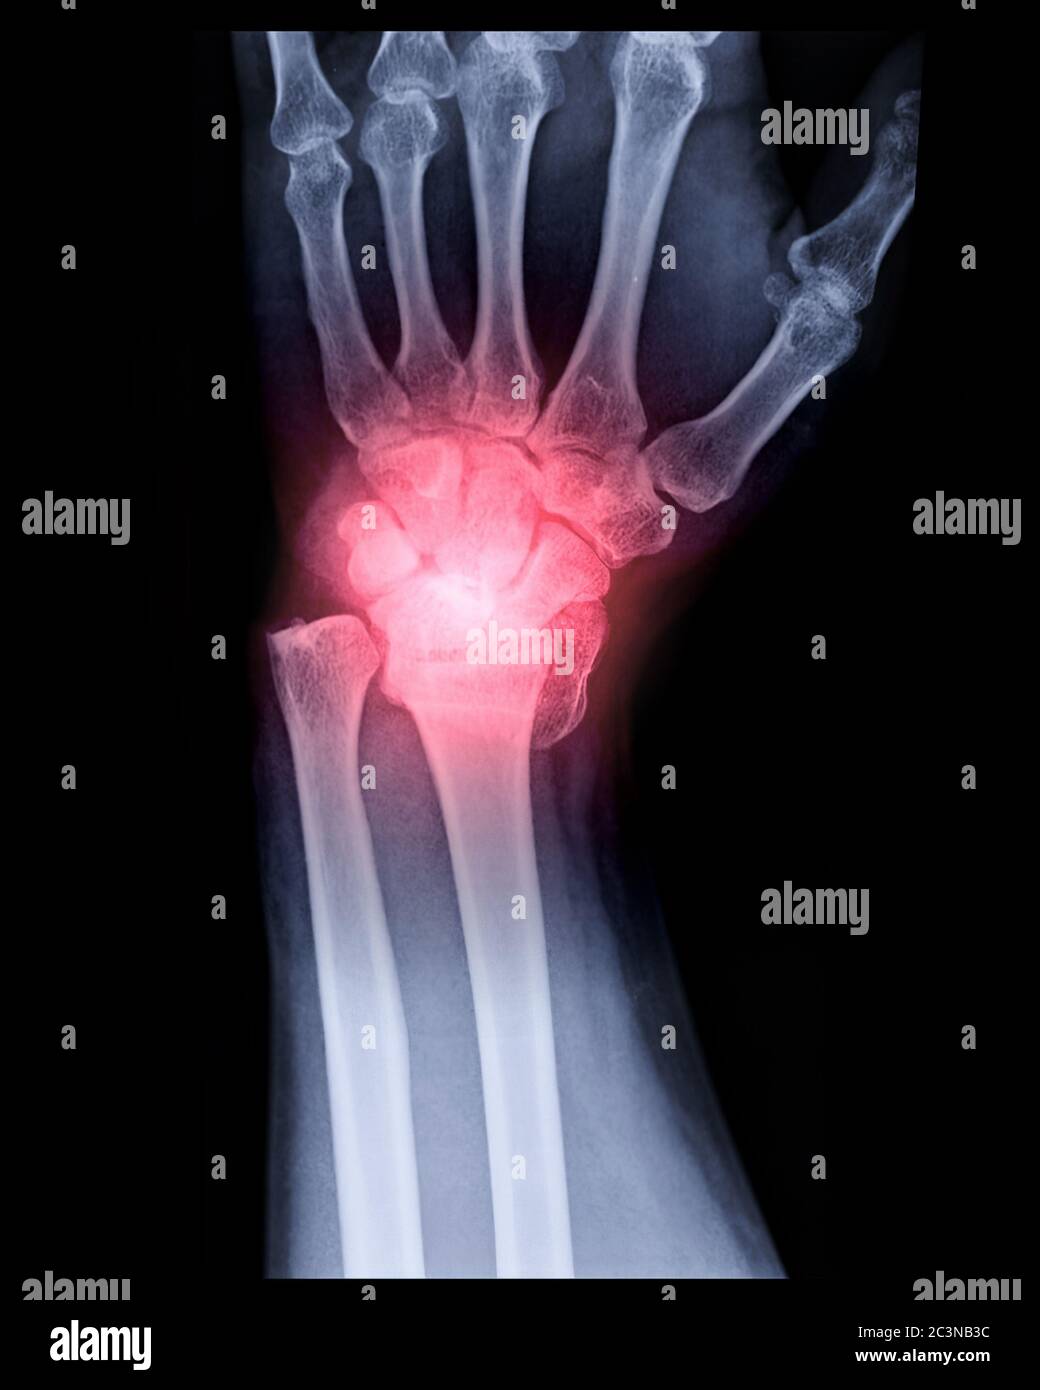 Immagine radiografica dell'articolazione del polso sinistra Vista AP per mostrare la frattura dell'osso radiale. Foto Stock